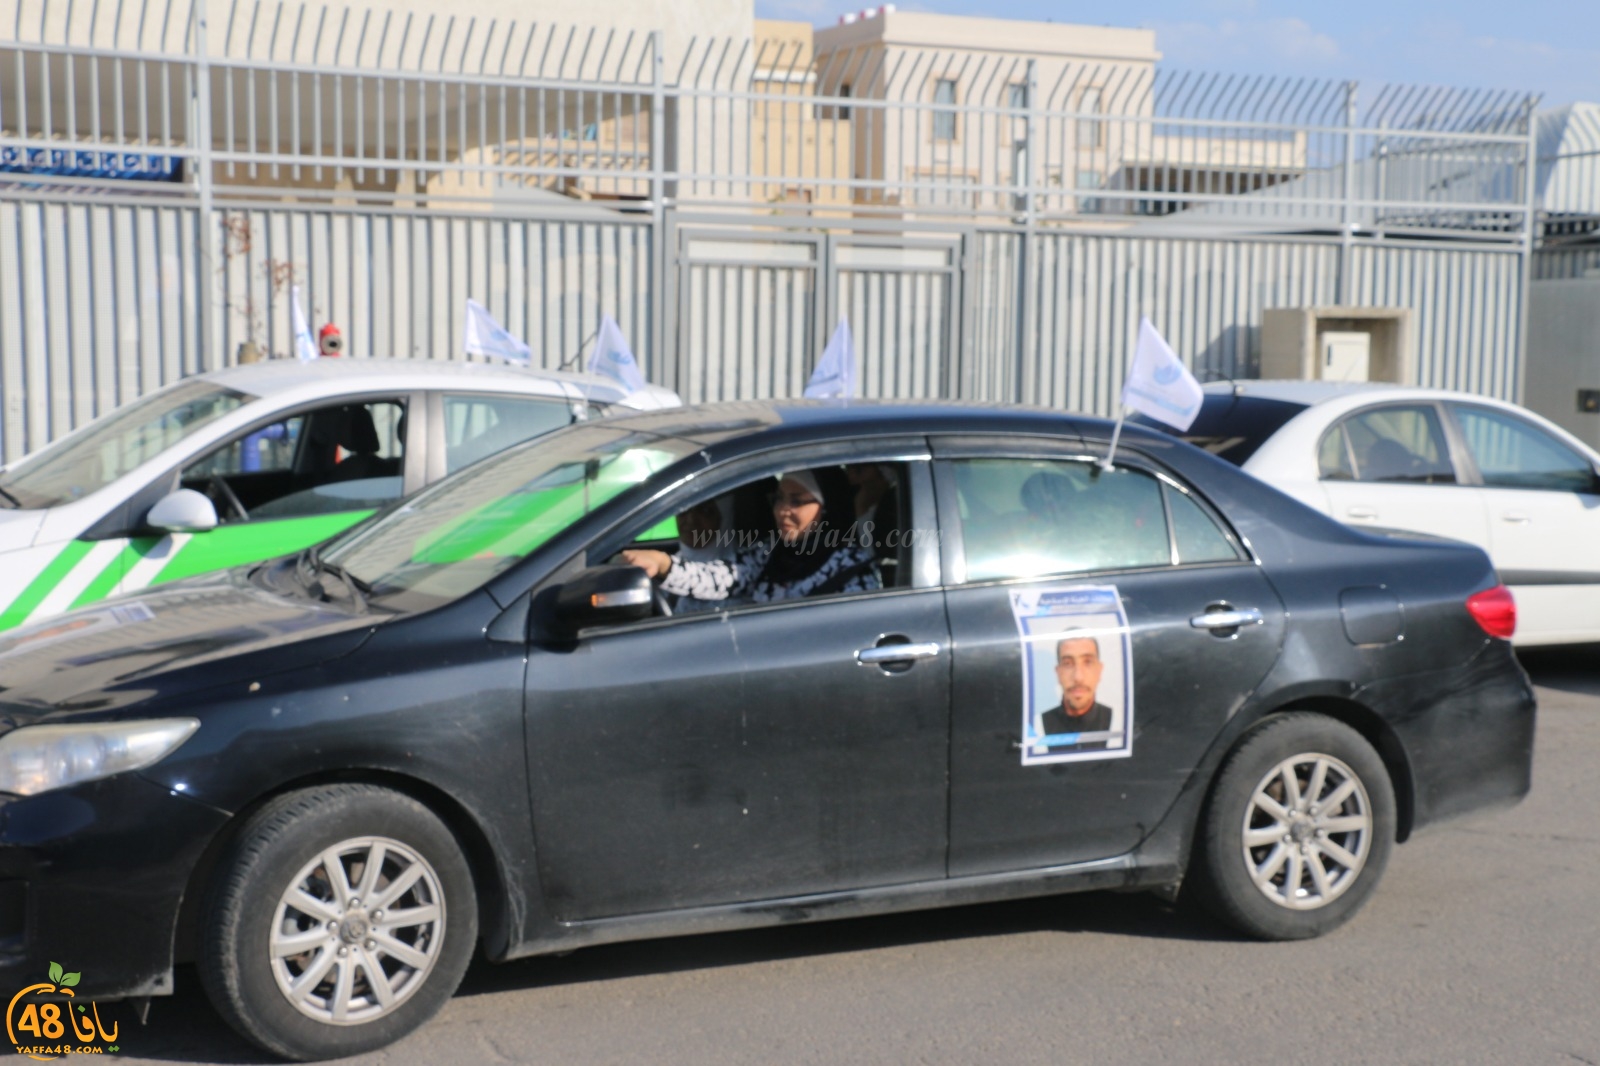 بالصور: مسيرة سيارات لمرشحي الهيئة تجوب شوارع مدينة يافا